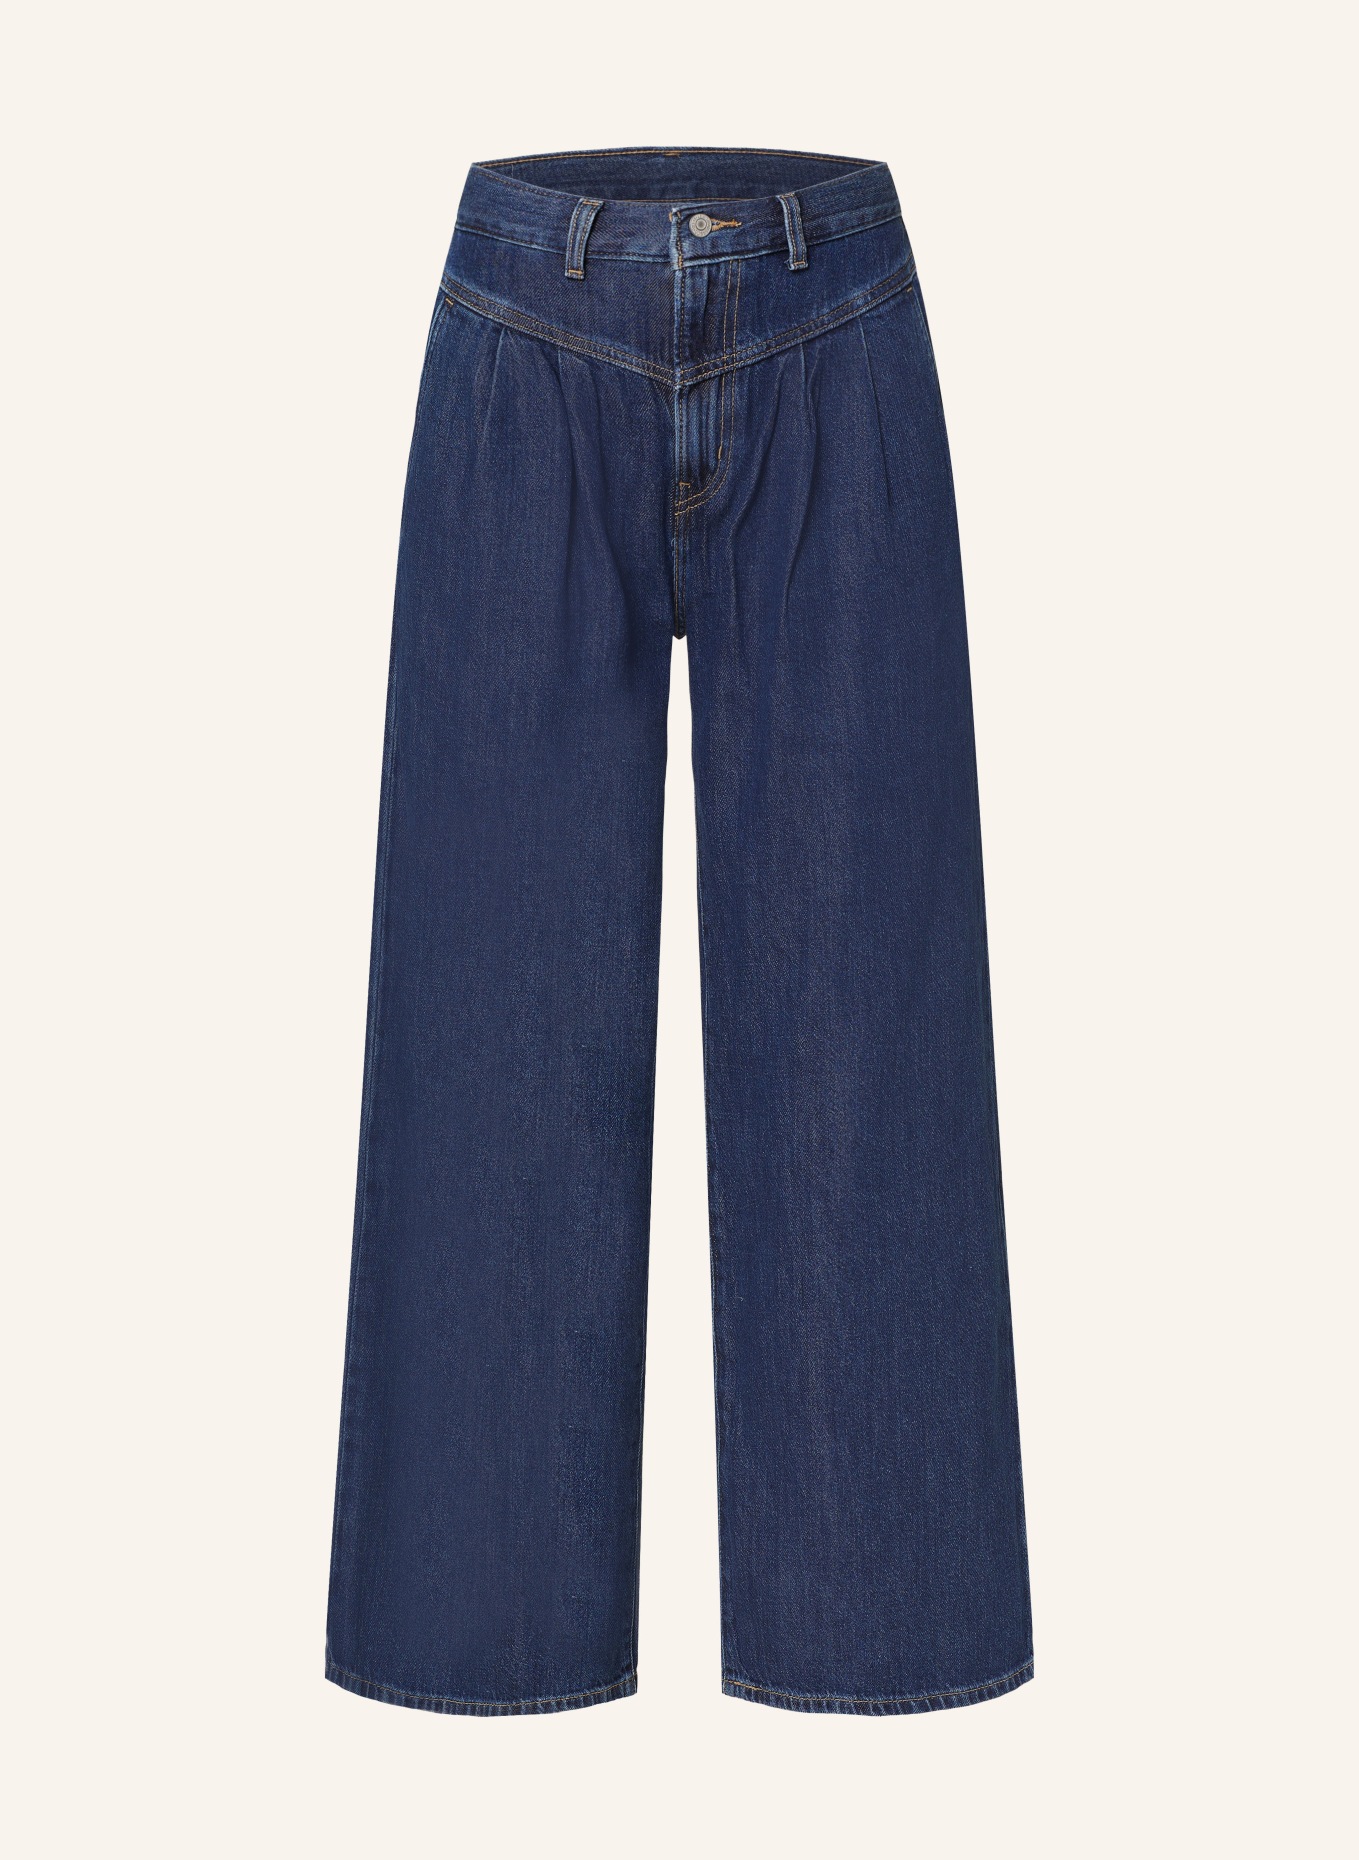 Levi's® 7/8 jeans, Color: 07 Med Indigo - Worn In (Image 1)